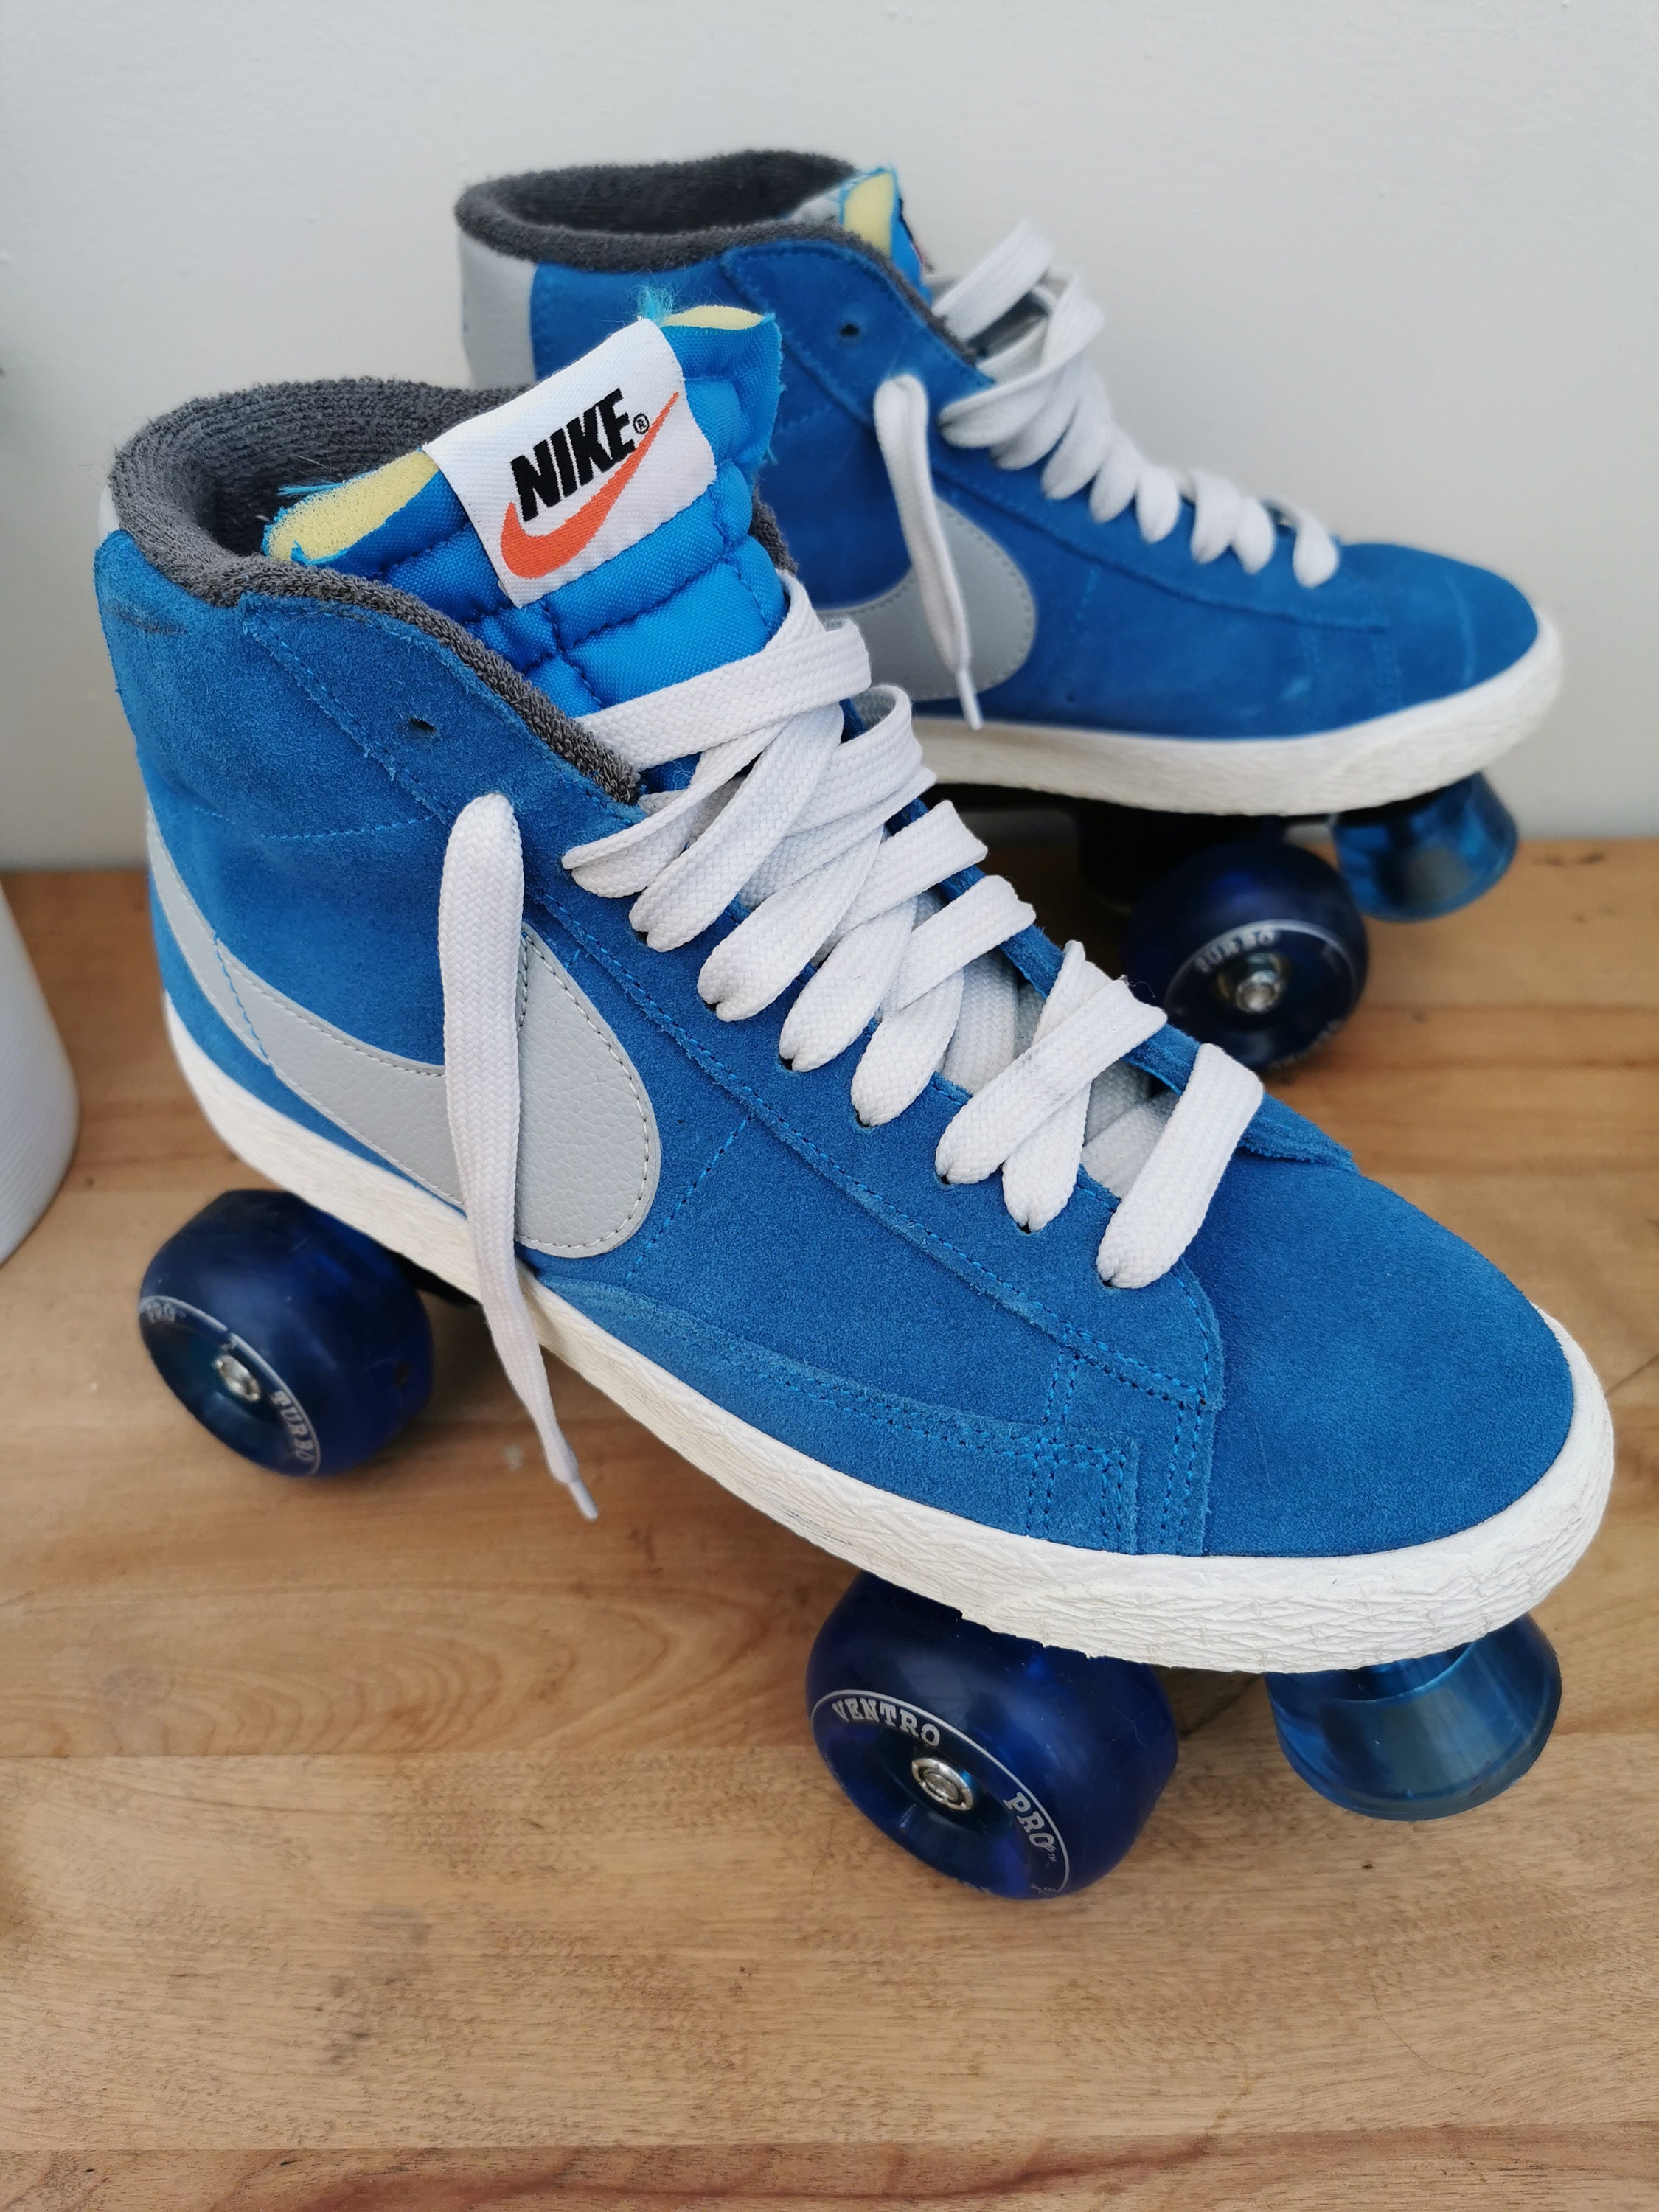 schrijven bijwoord overdracht Custom NIKE Blazer Roller Skates // Handmade // Skates // - Etsy Nederland